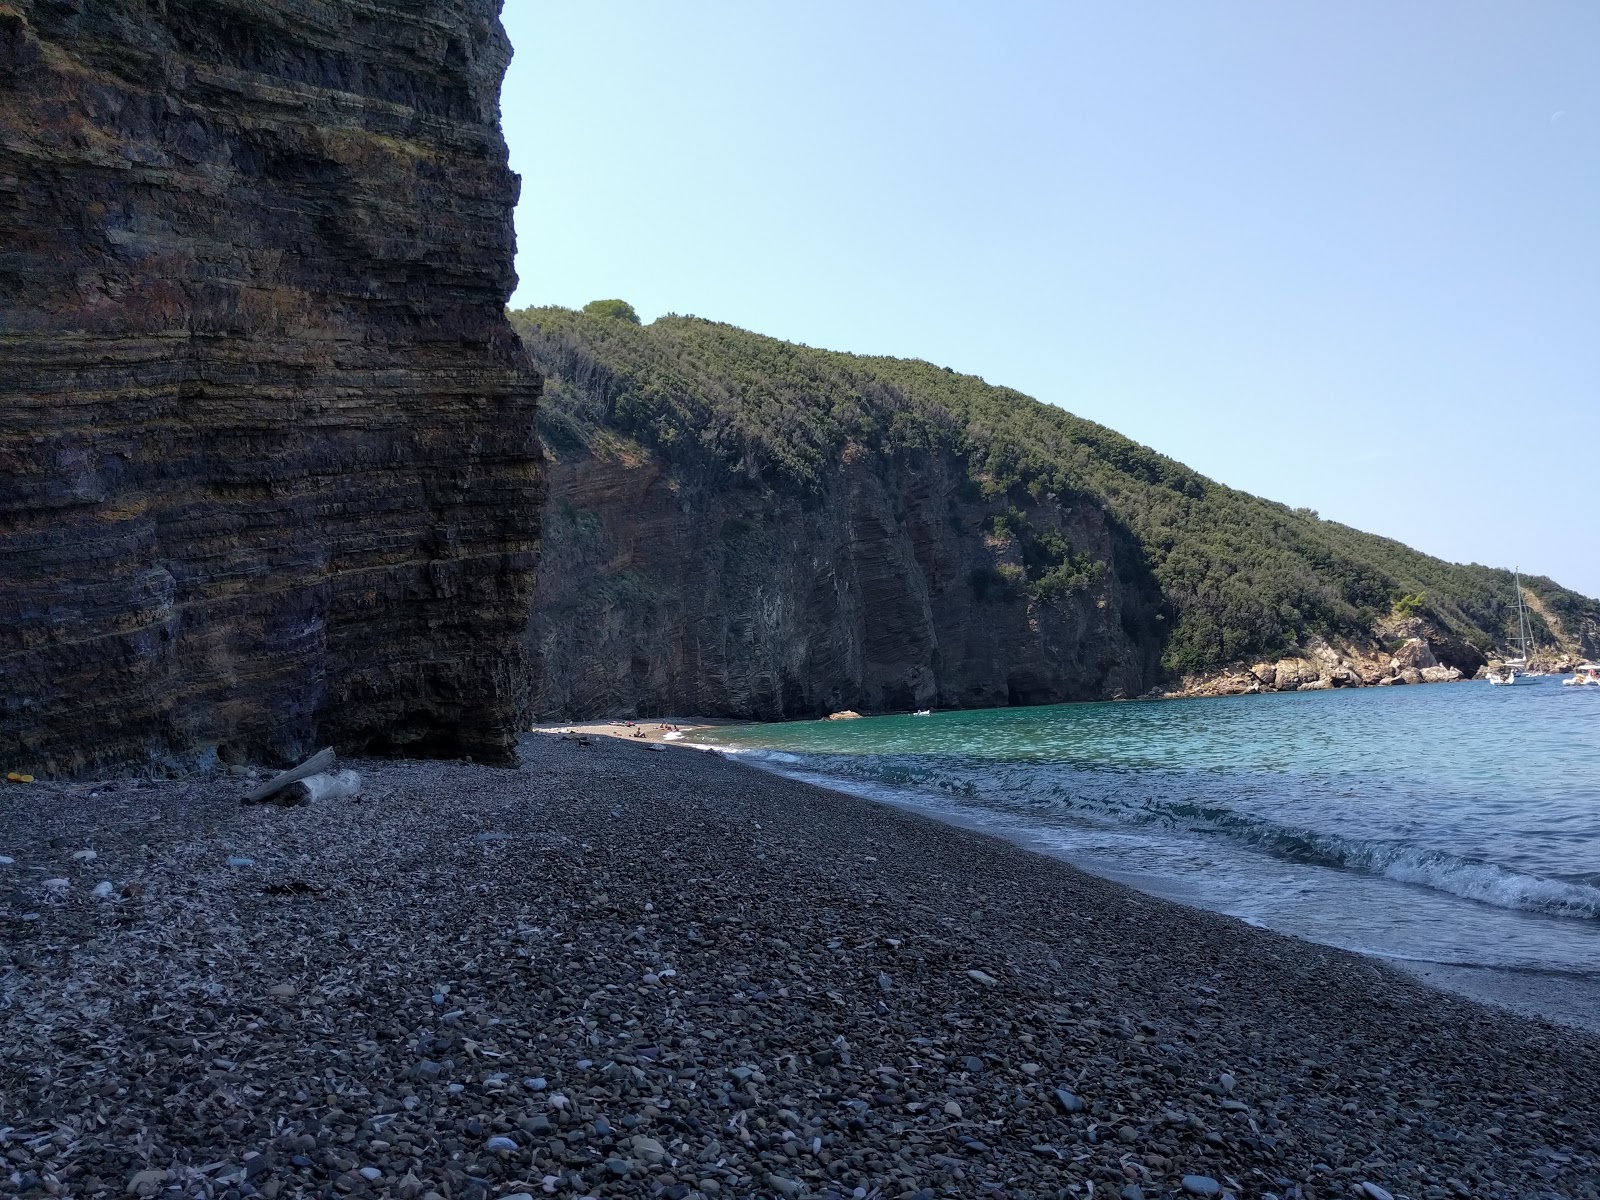 Zupignano beach'in fotoğrafı geniş plaj ile birlikte